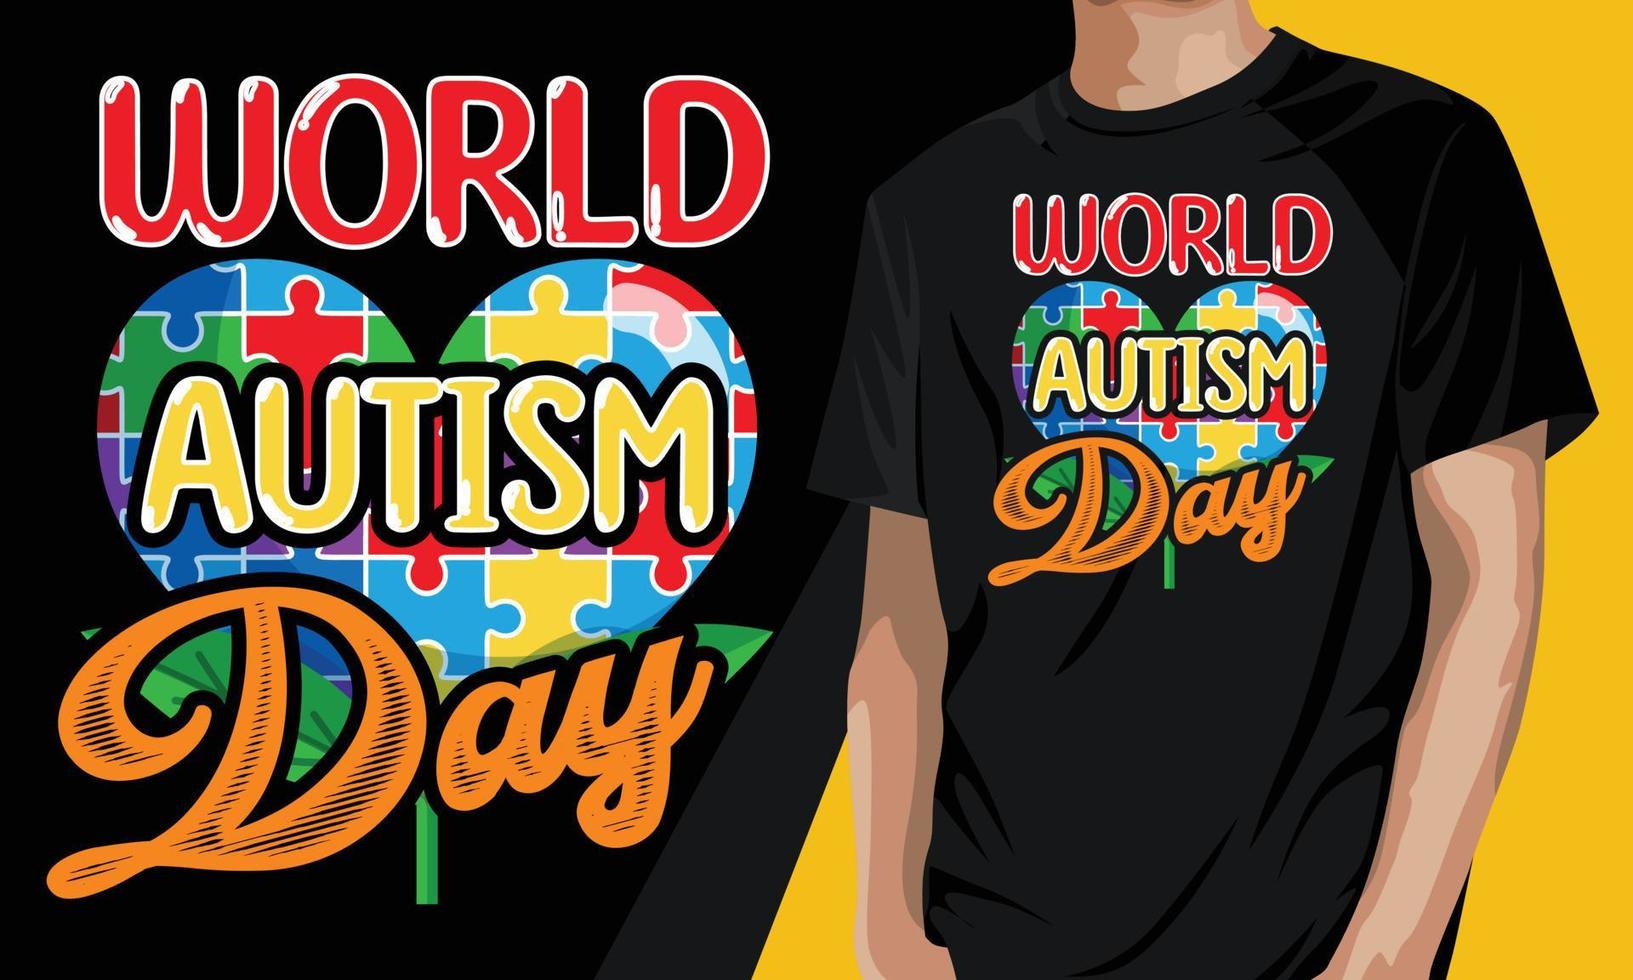 t-shirt puzzle colorato giornata mondiale di sensibilizzazione sull'autismo vettore